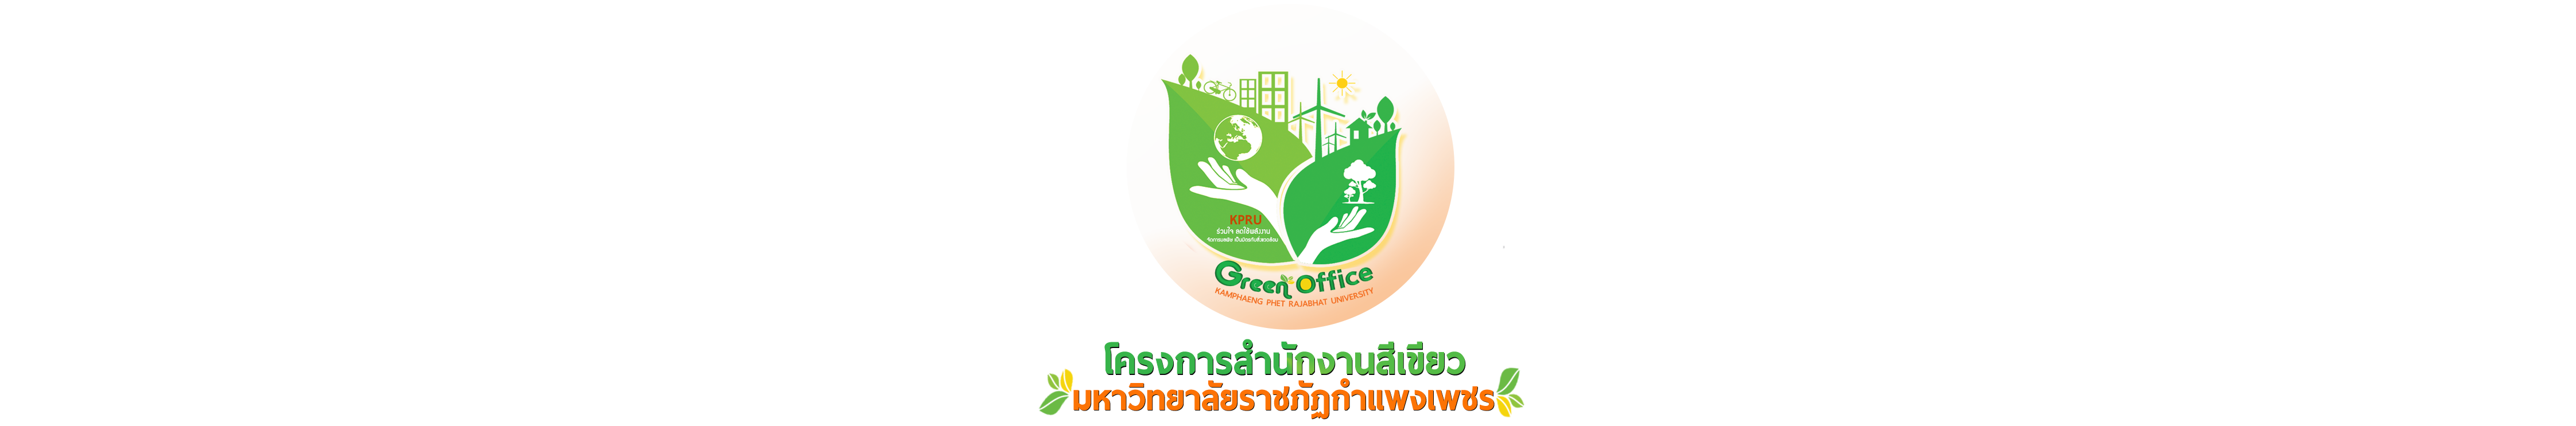 โครงการสำนักงานสีเขียว มหาวิทยาลัยราชภัฏกำแพงเพชร (Green office KPRU)